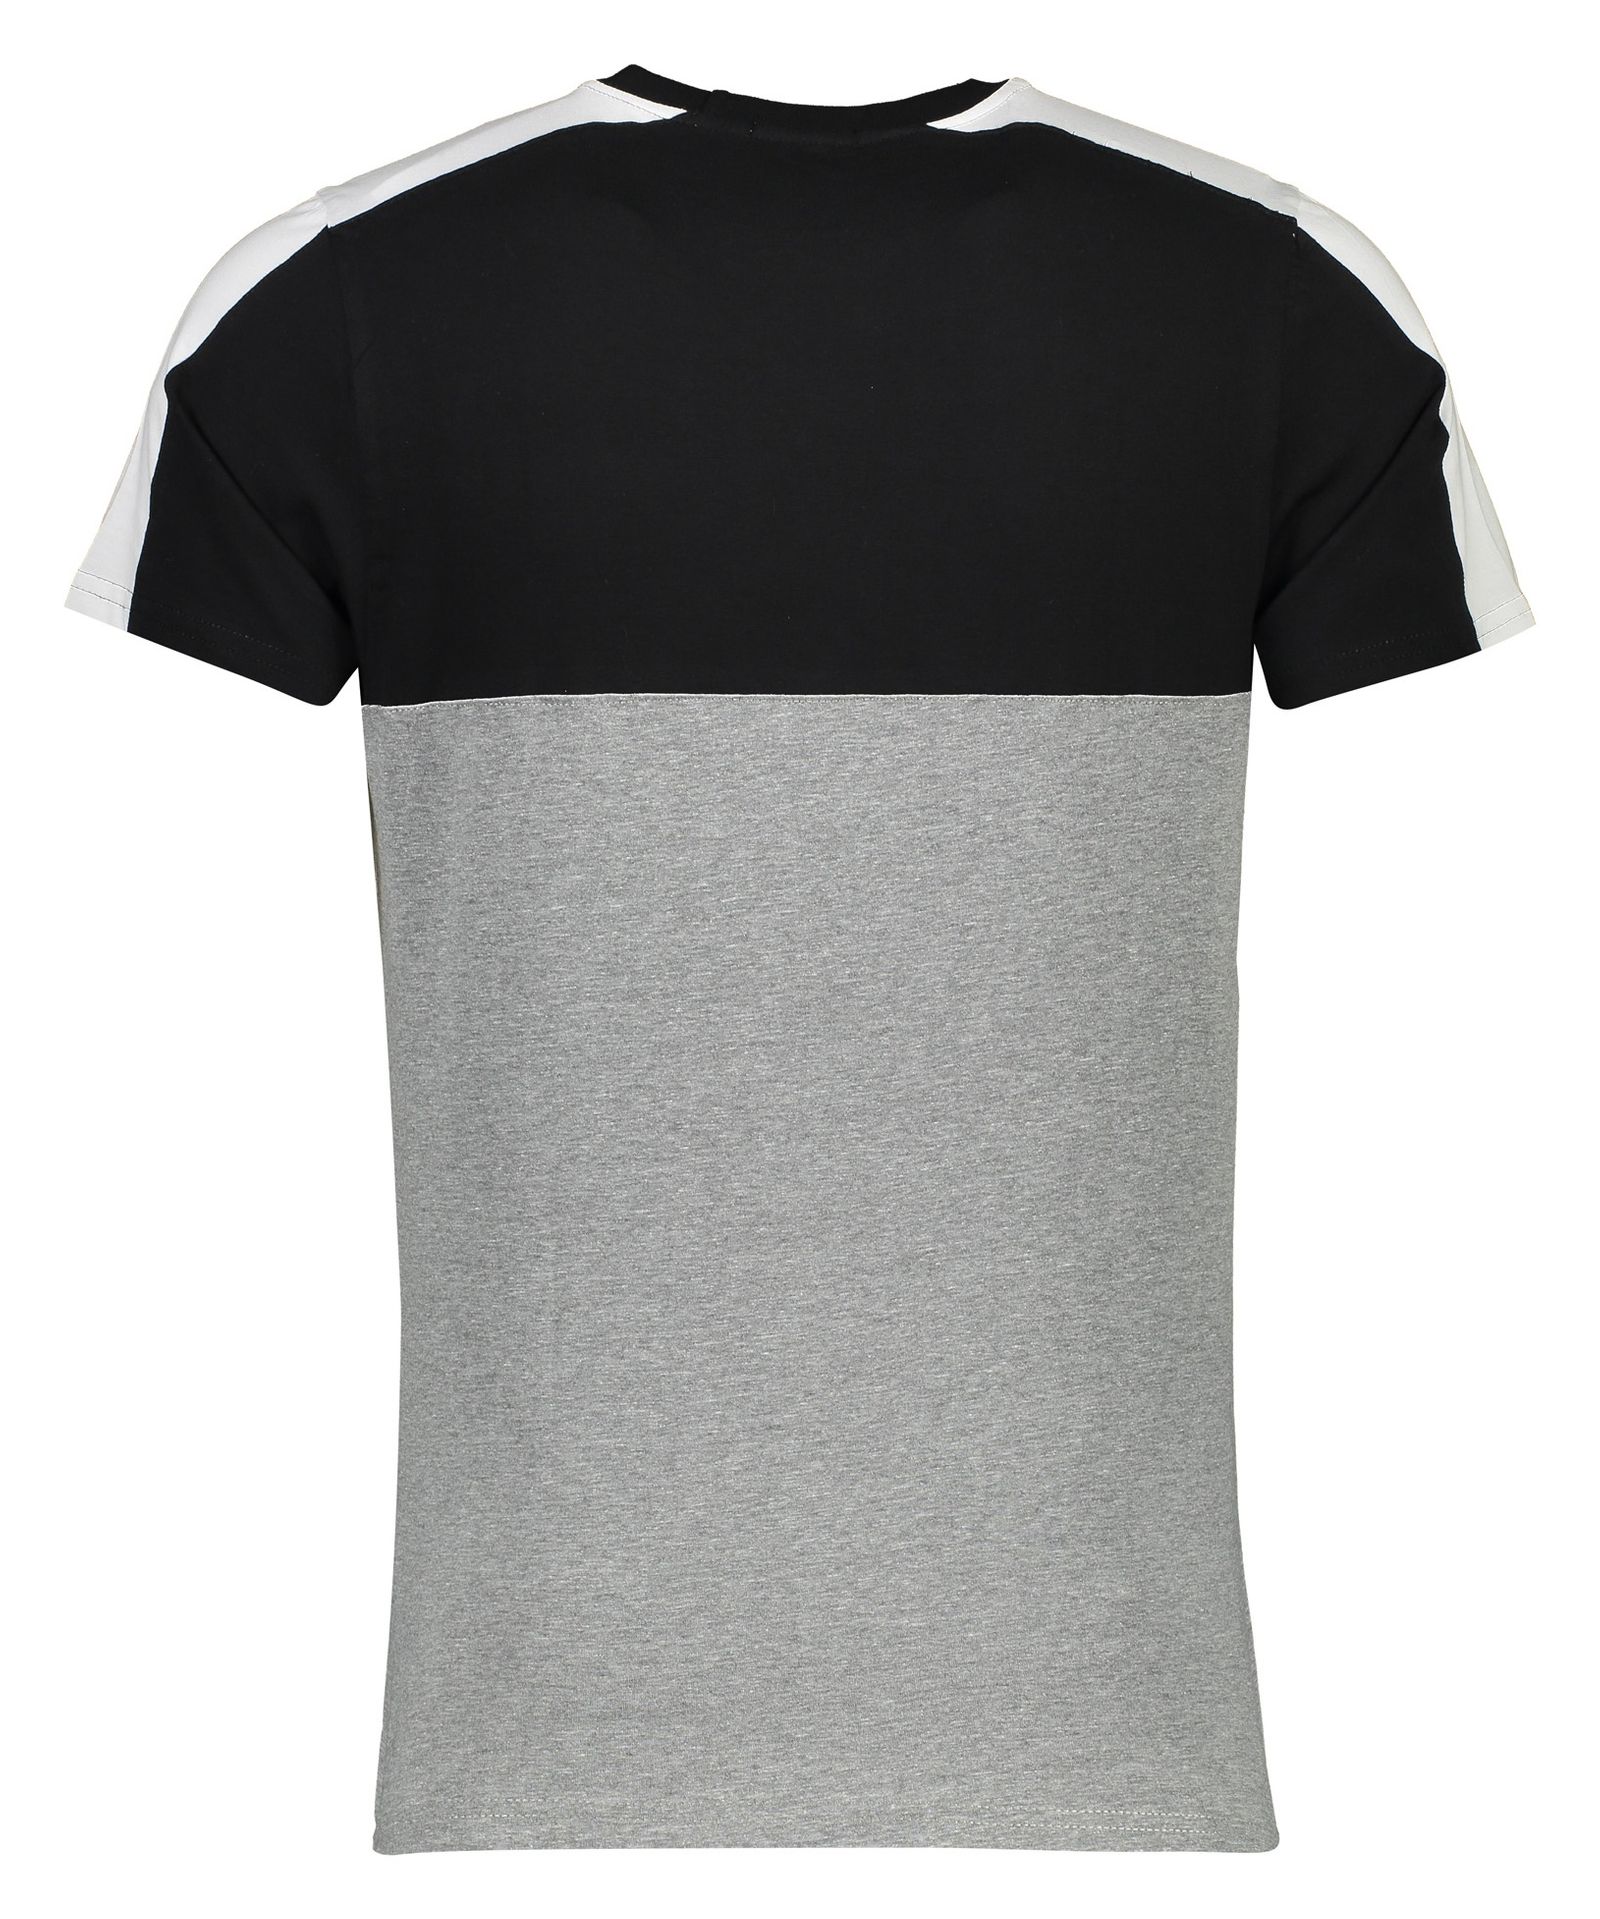 تی شرت مردانه آر ان اس مدل 1131109-99 -  - 4